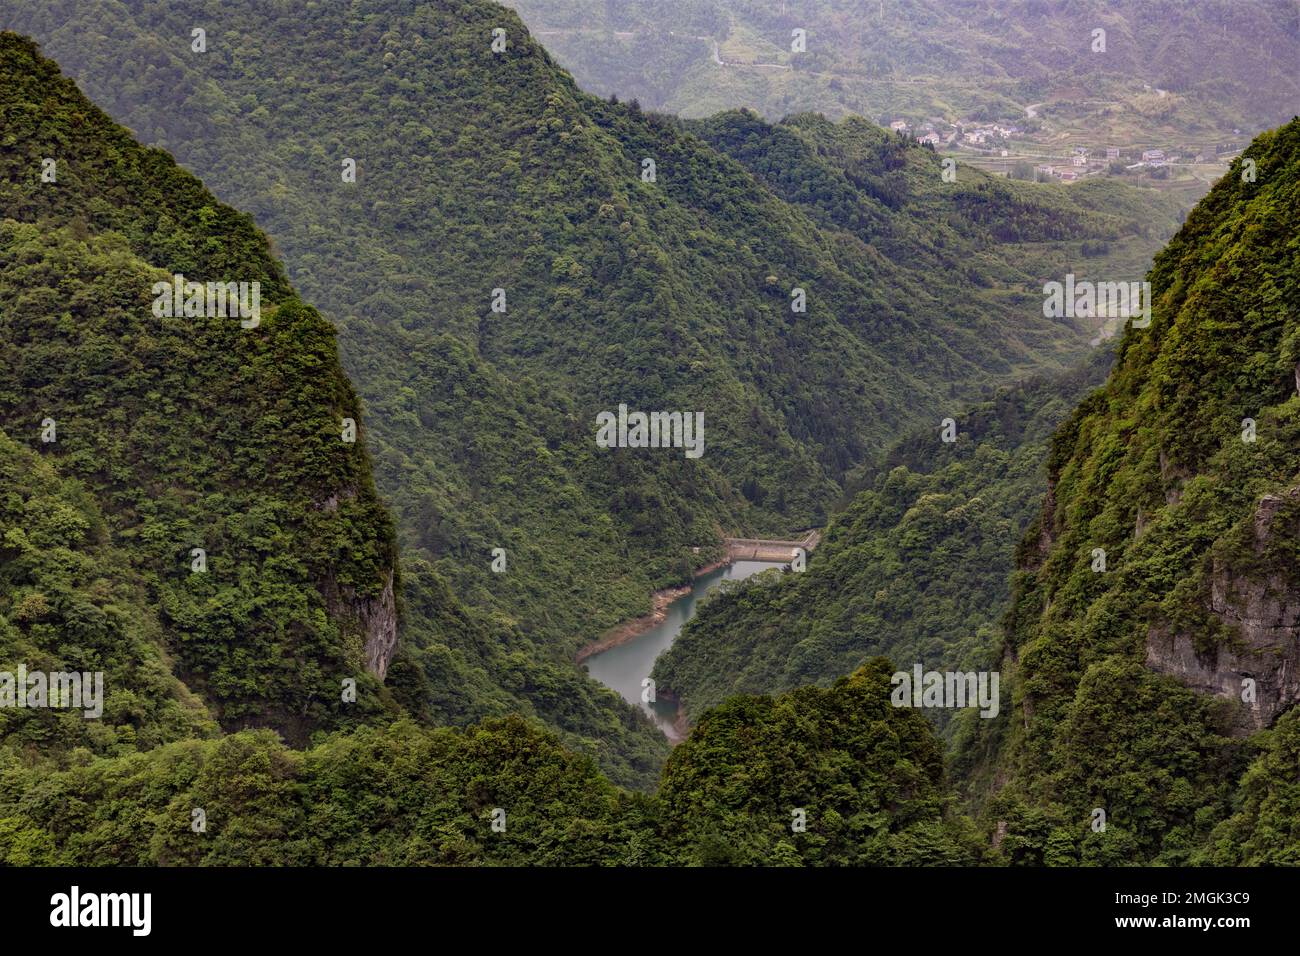 La belle campagne de Guilin, montrant les montagnes de Karst. Région autonome de Guangxi Zhuang, Chine Banque D'Images